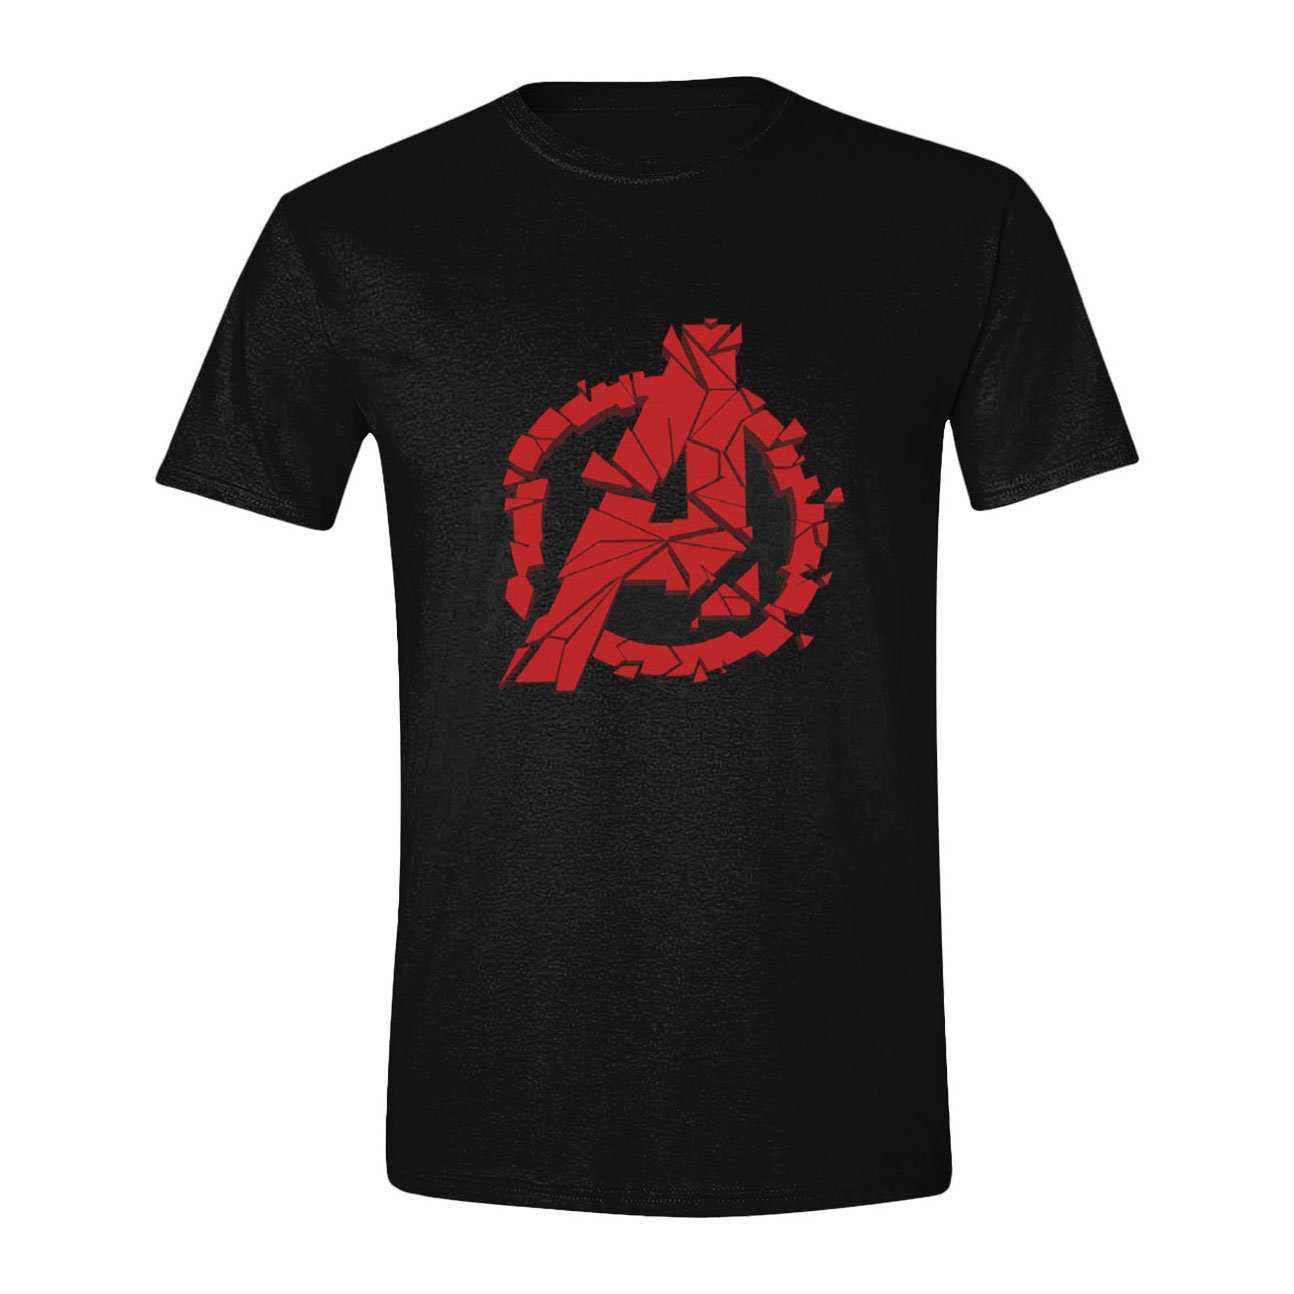 Avengers : Endgame T-Shirt Shattered Logo (M)